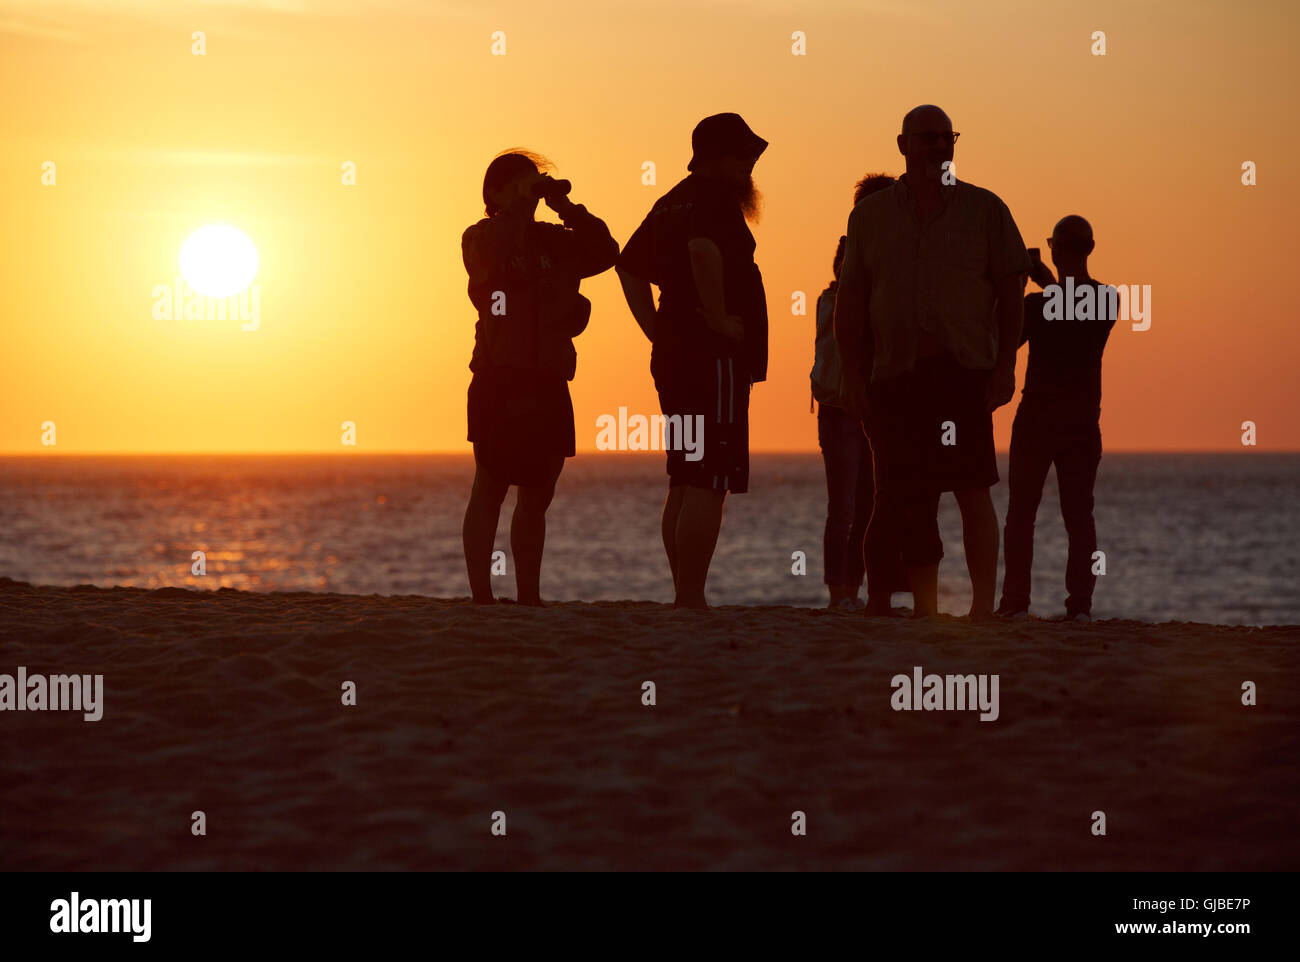 People on Race Point Beach, sunset, Provincetown, Massachusetts Stock Photo